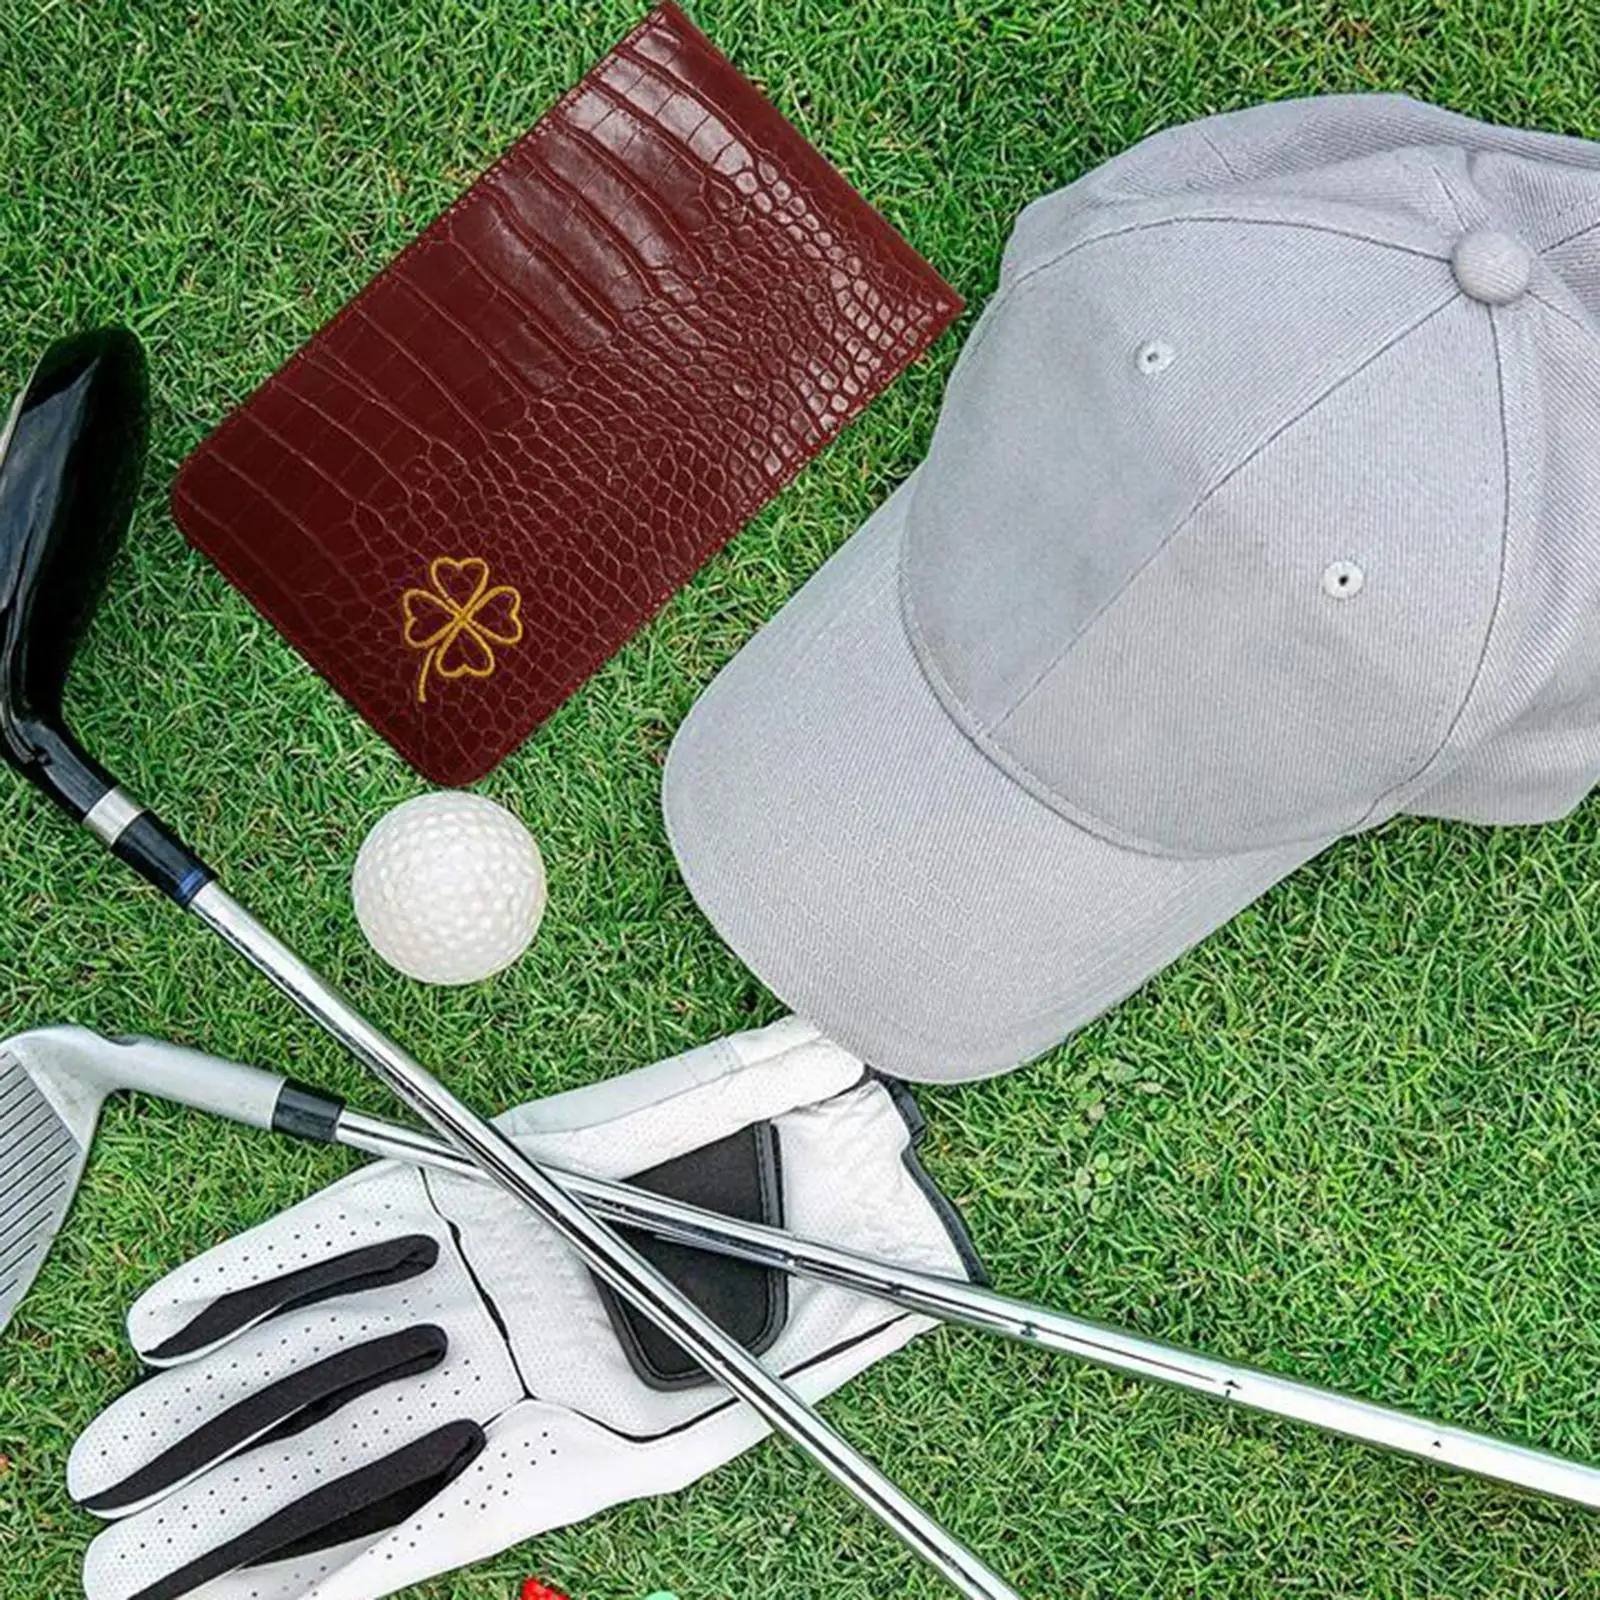 PU Leather Golf Performance Scorecard Holder Yardage Holder Cover